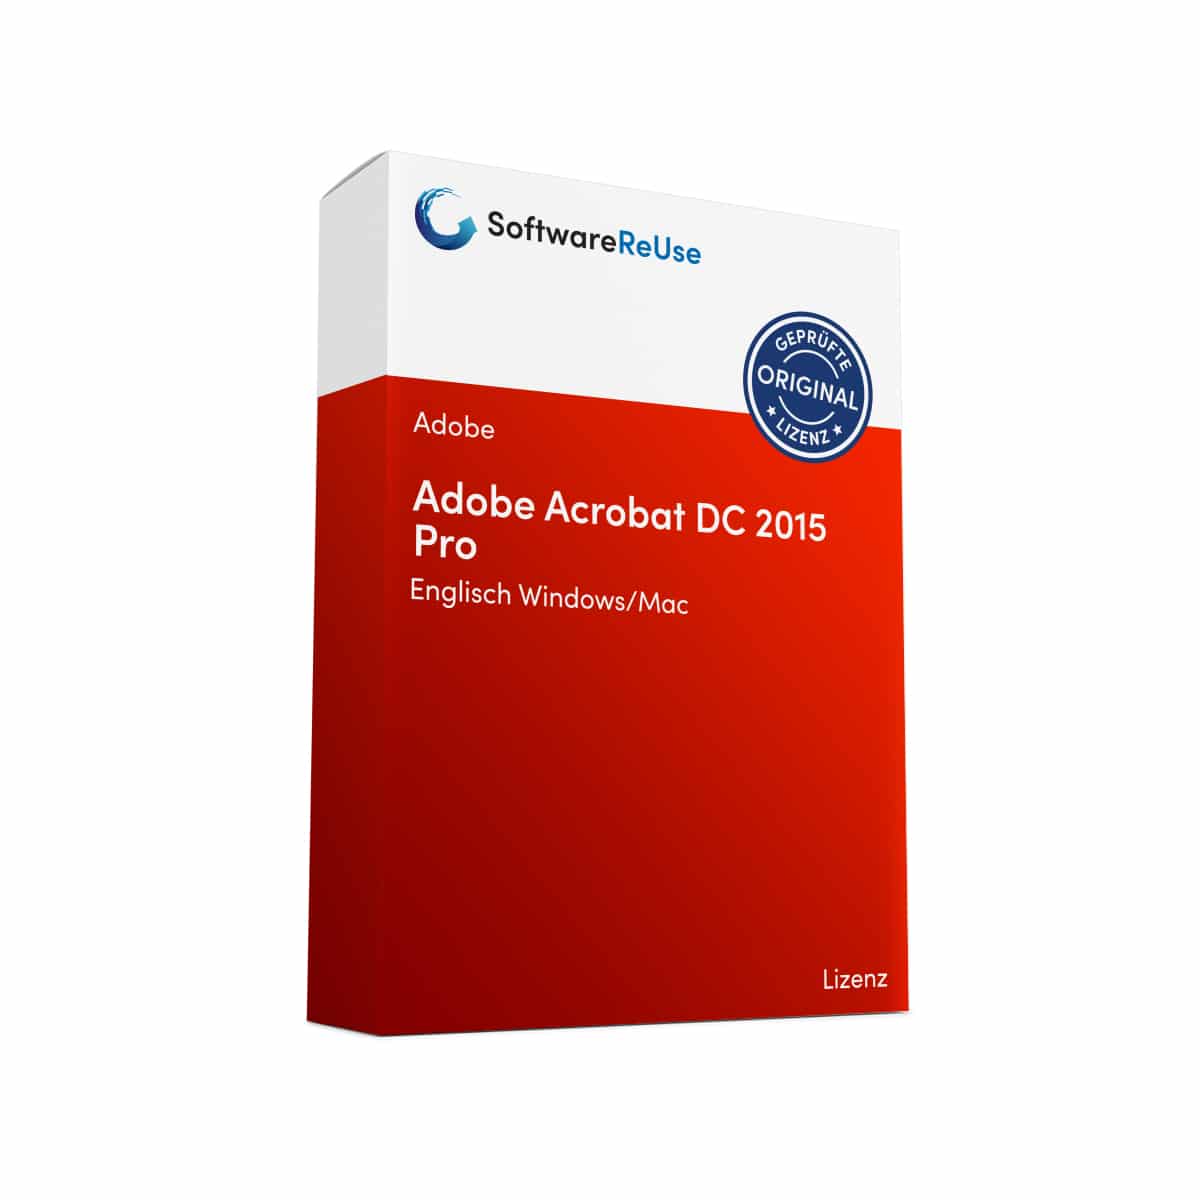 Adobe Acrobat DC 2015 Pro